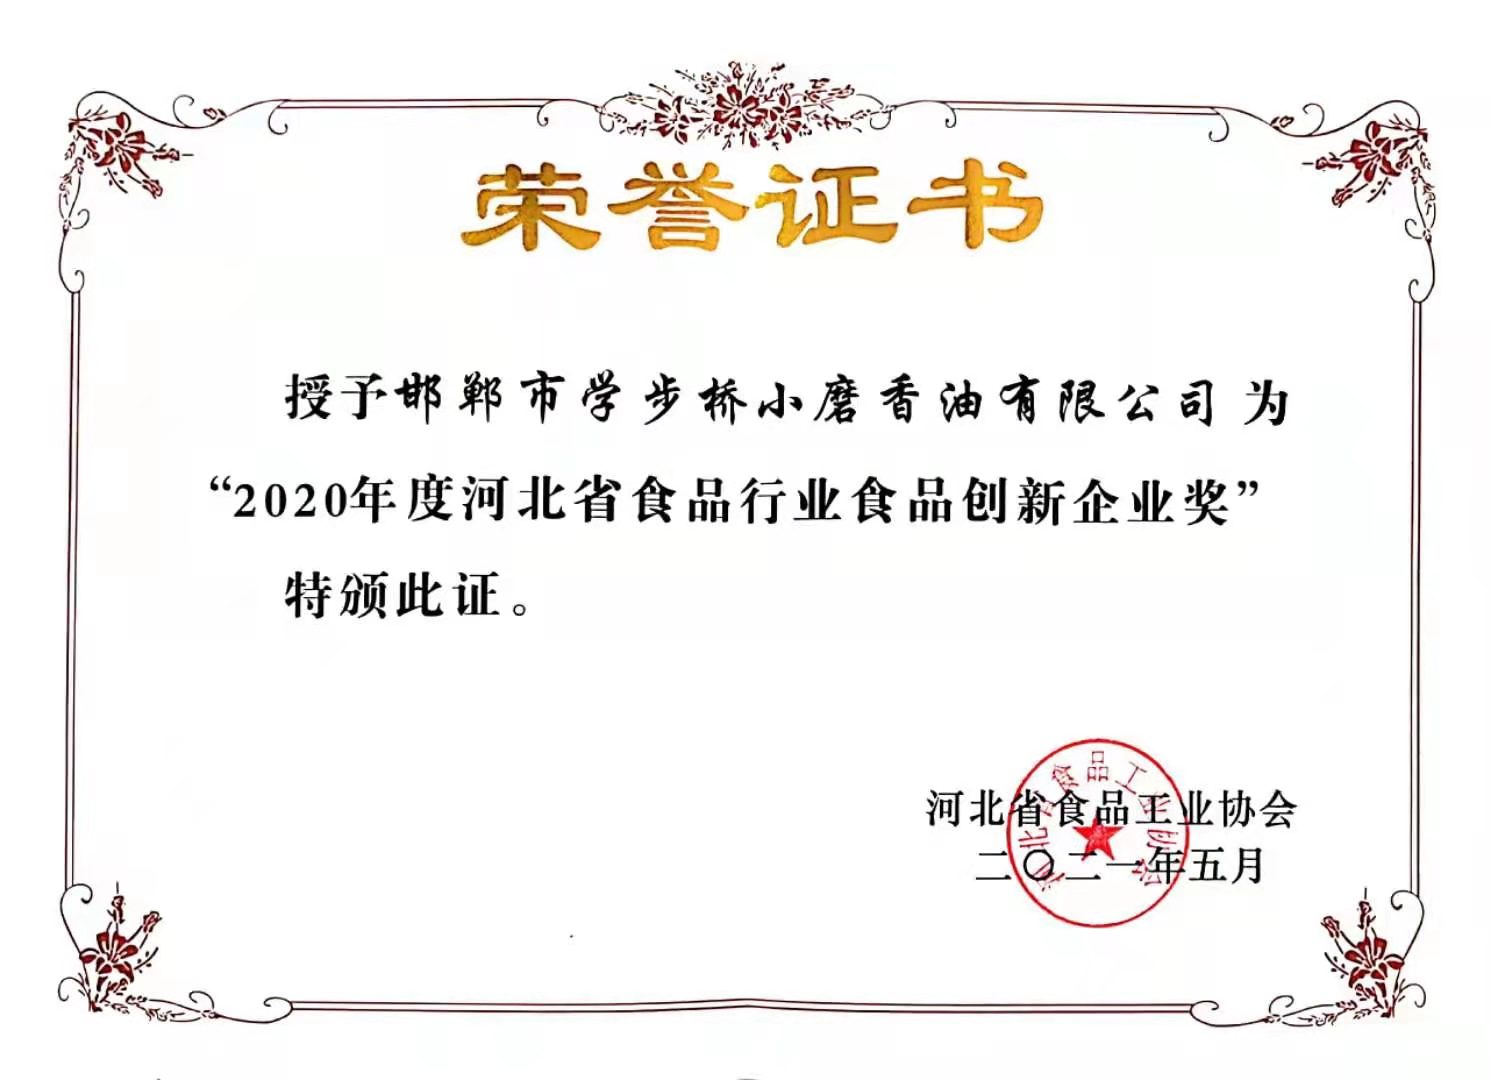 2020年度河北省食品行业食品创新企业奖